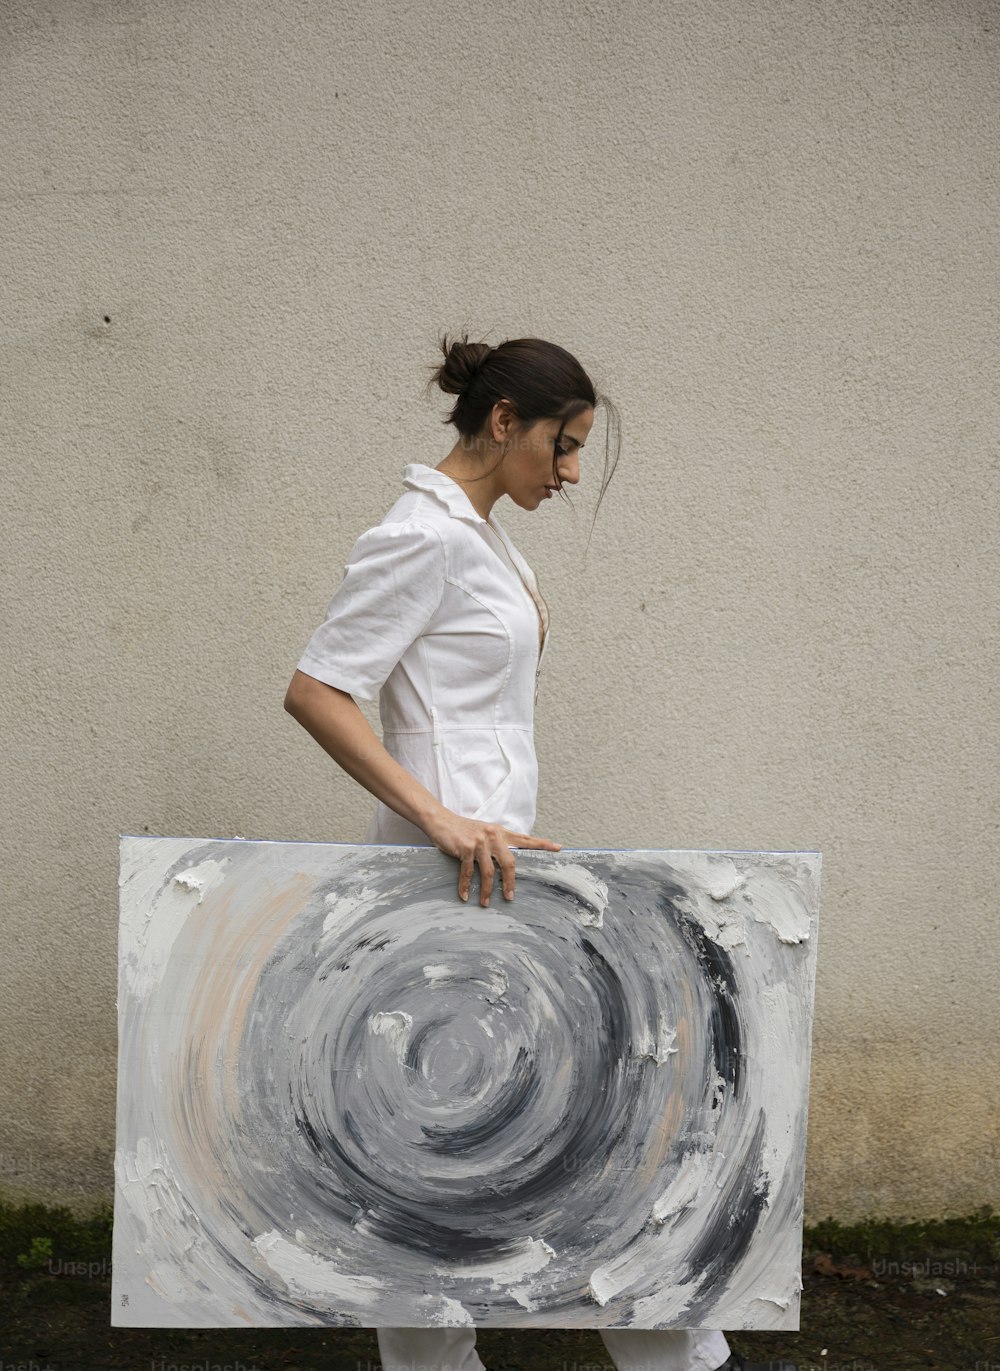 Eine Frau hält ein großes Kunstwerk in der Hand